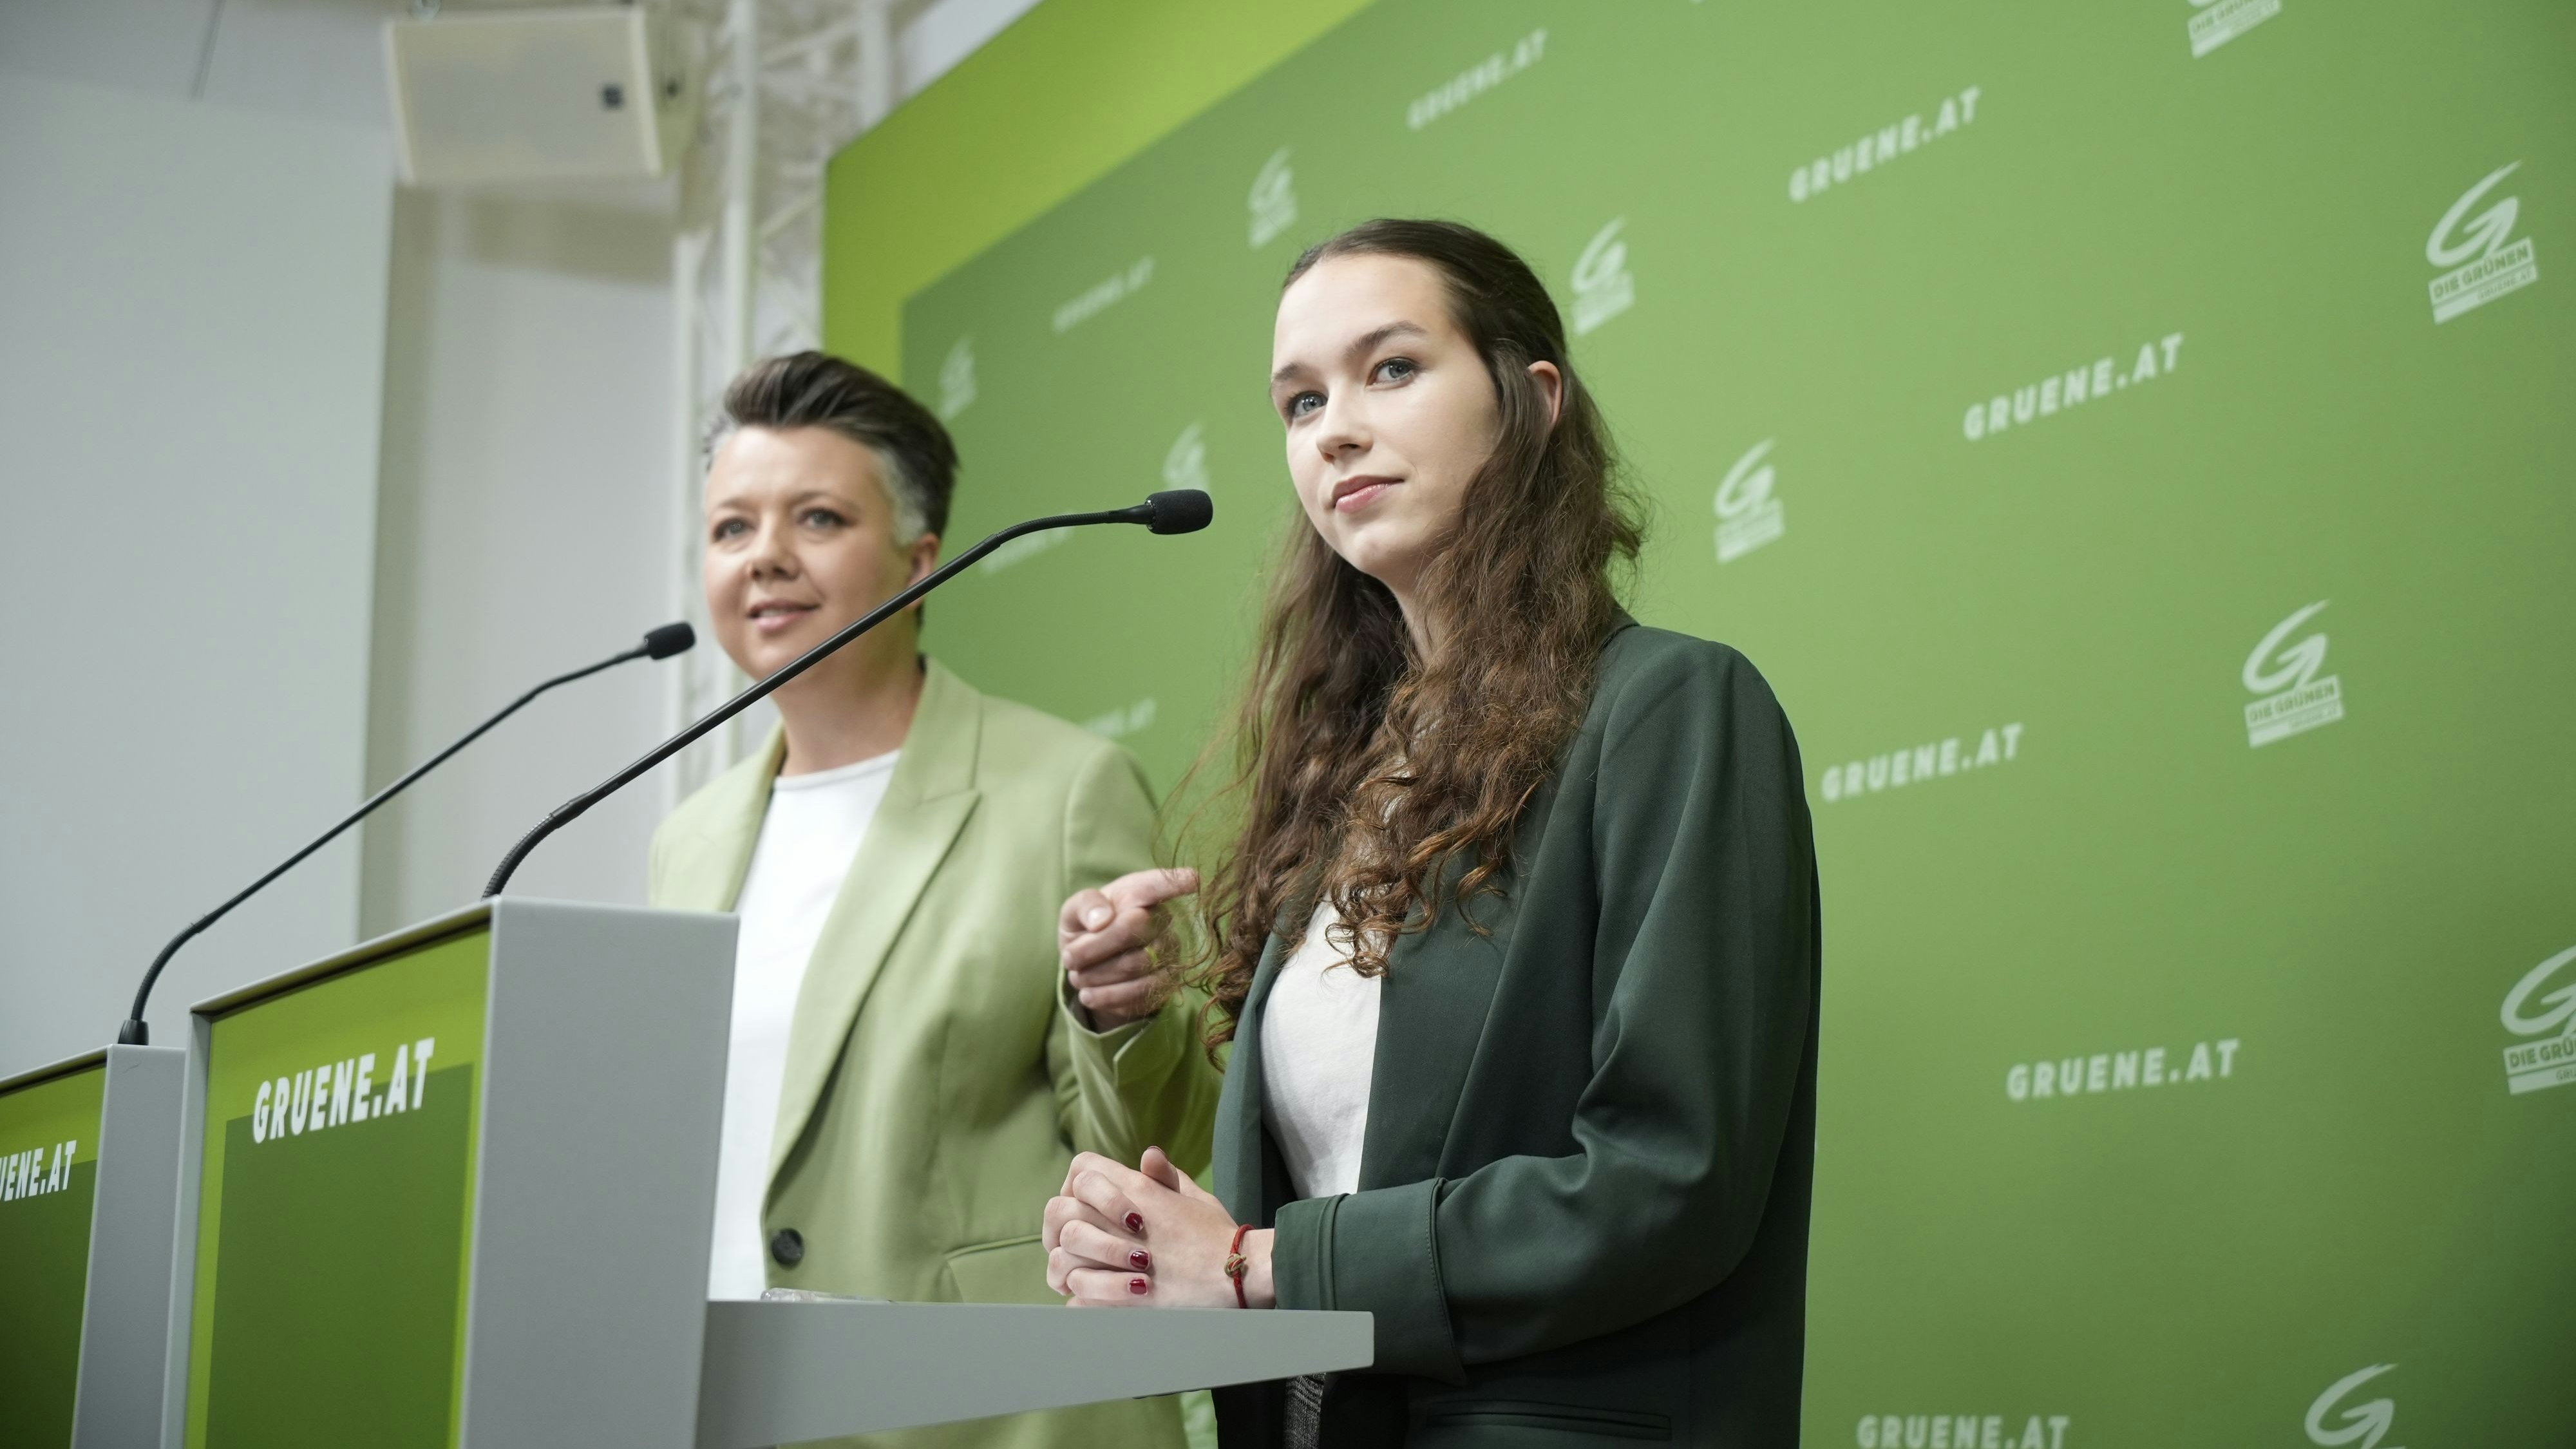 Olga Voglauer, Generalsekretärin der Grünen, mit EU-Spitzenkandidatin Lena Schilling